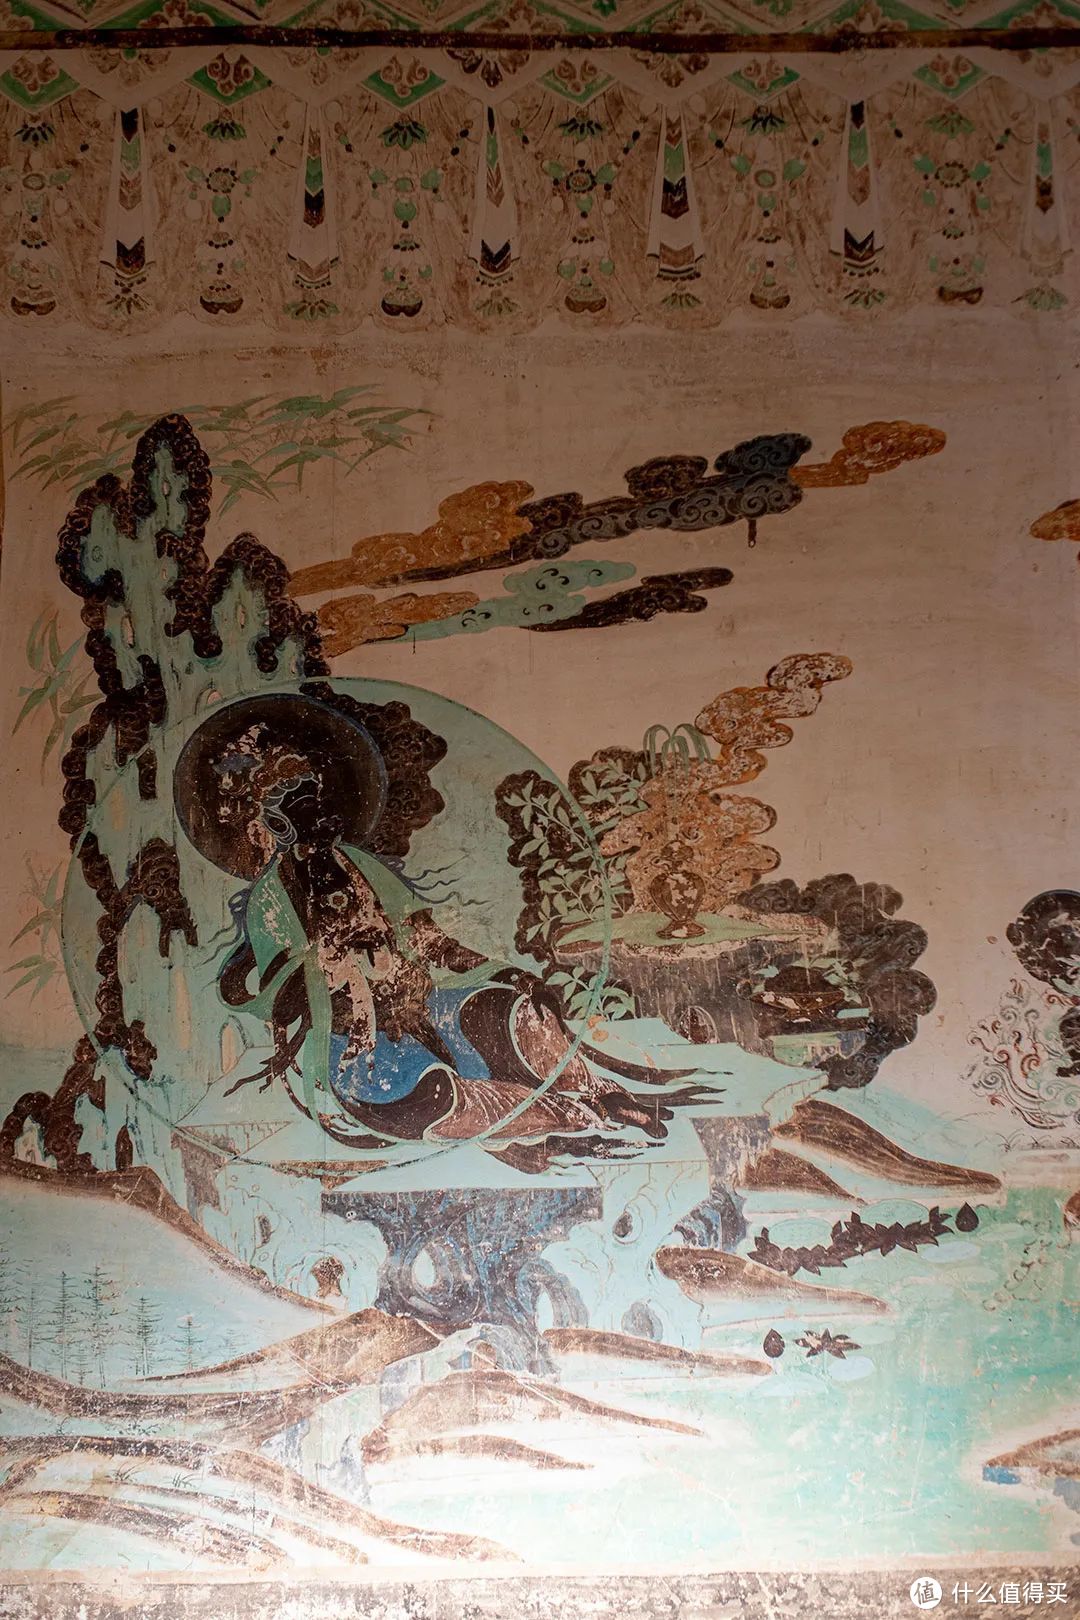 西夏王陵博物馆榆林窟第 2 窟复制窟的水月观音 ©️沐昀